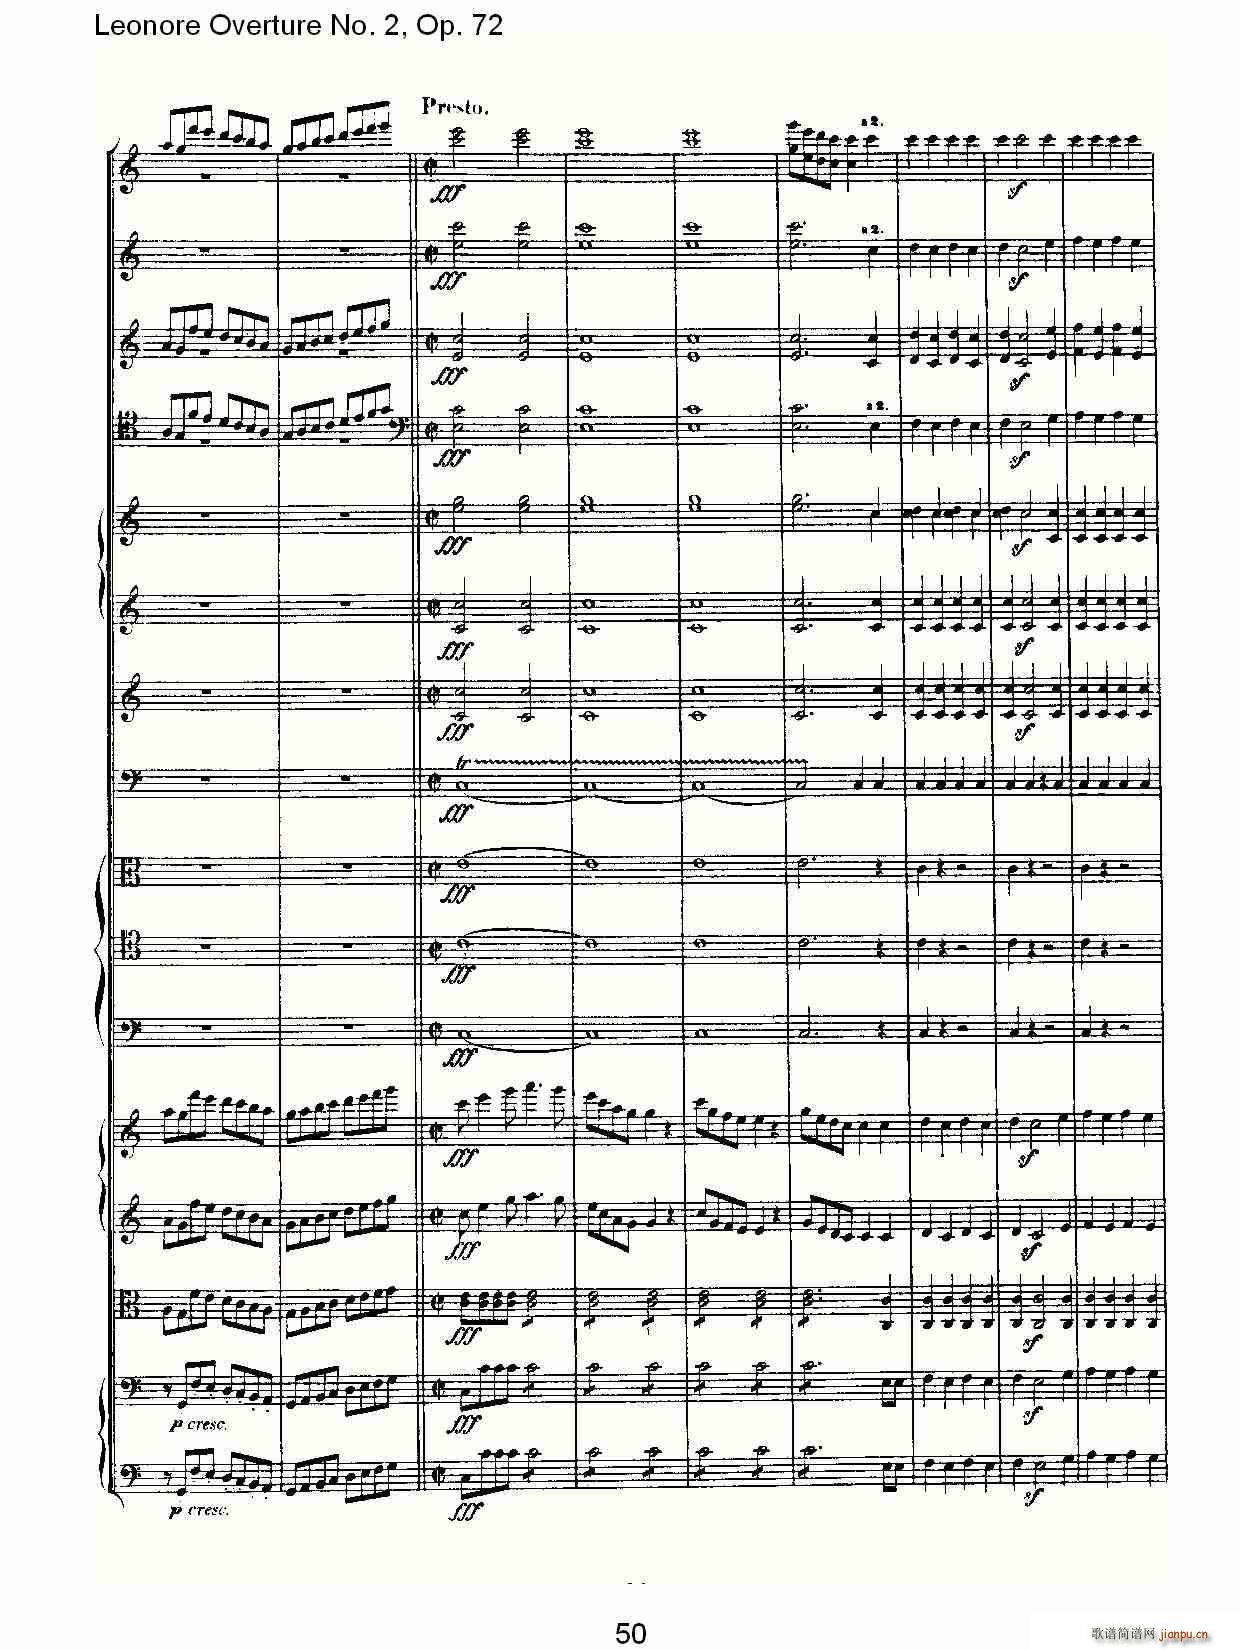 Leonore Overture No. 2Op. 72(ʮּ)10